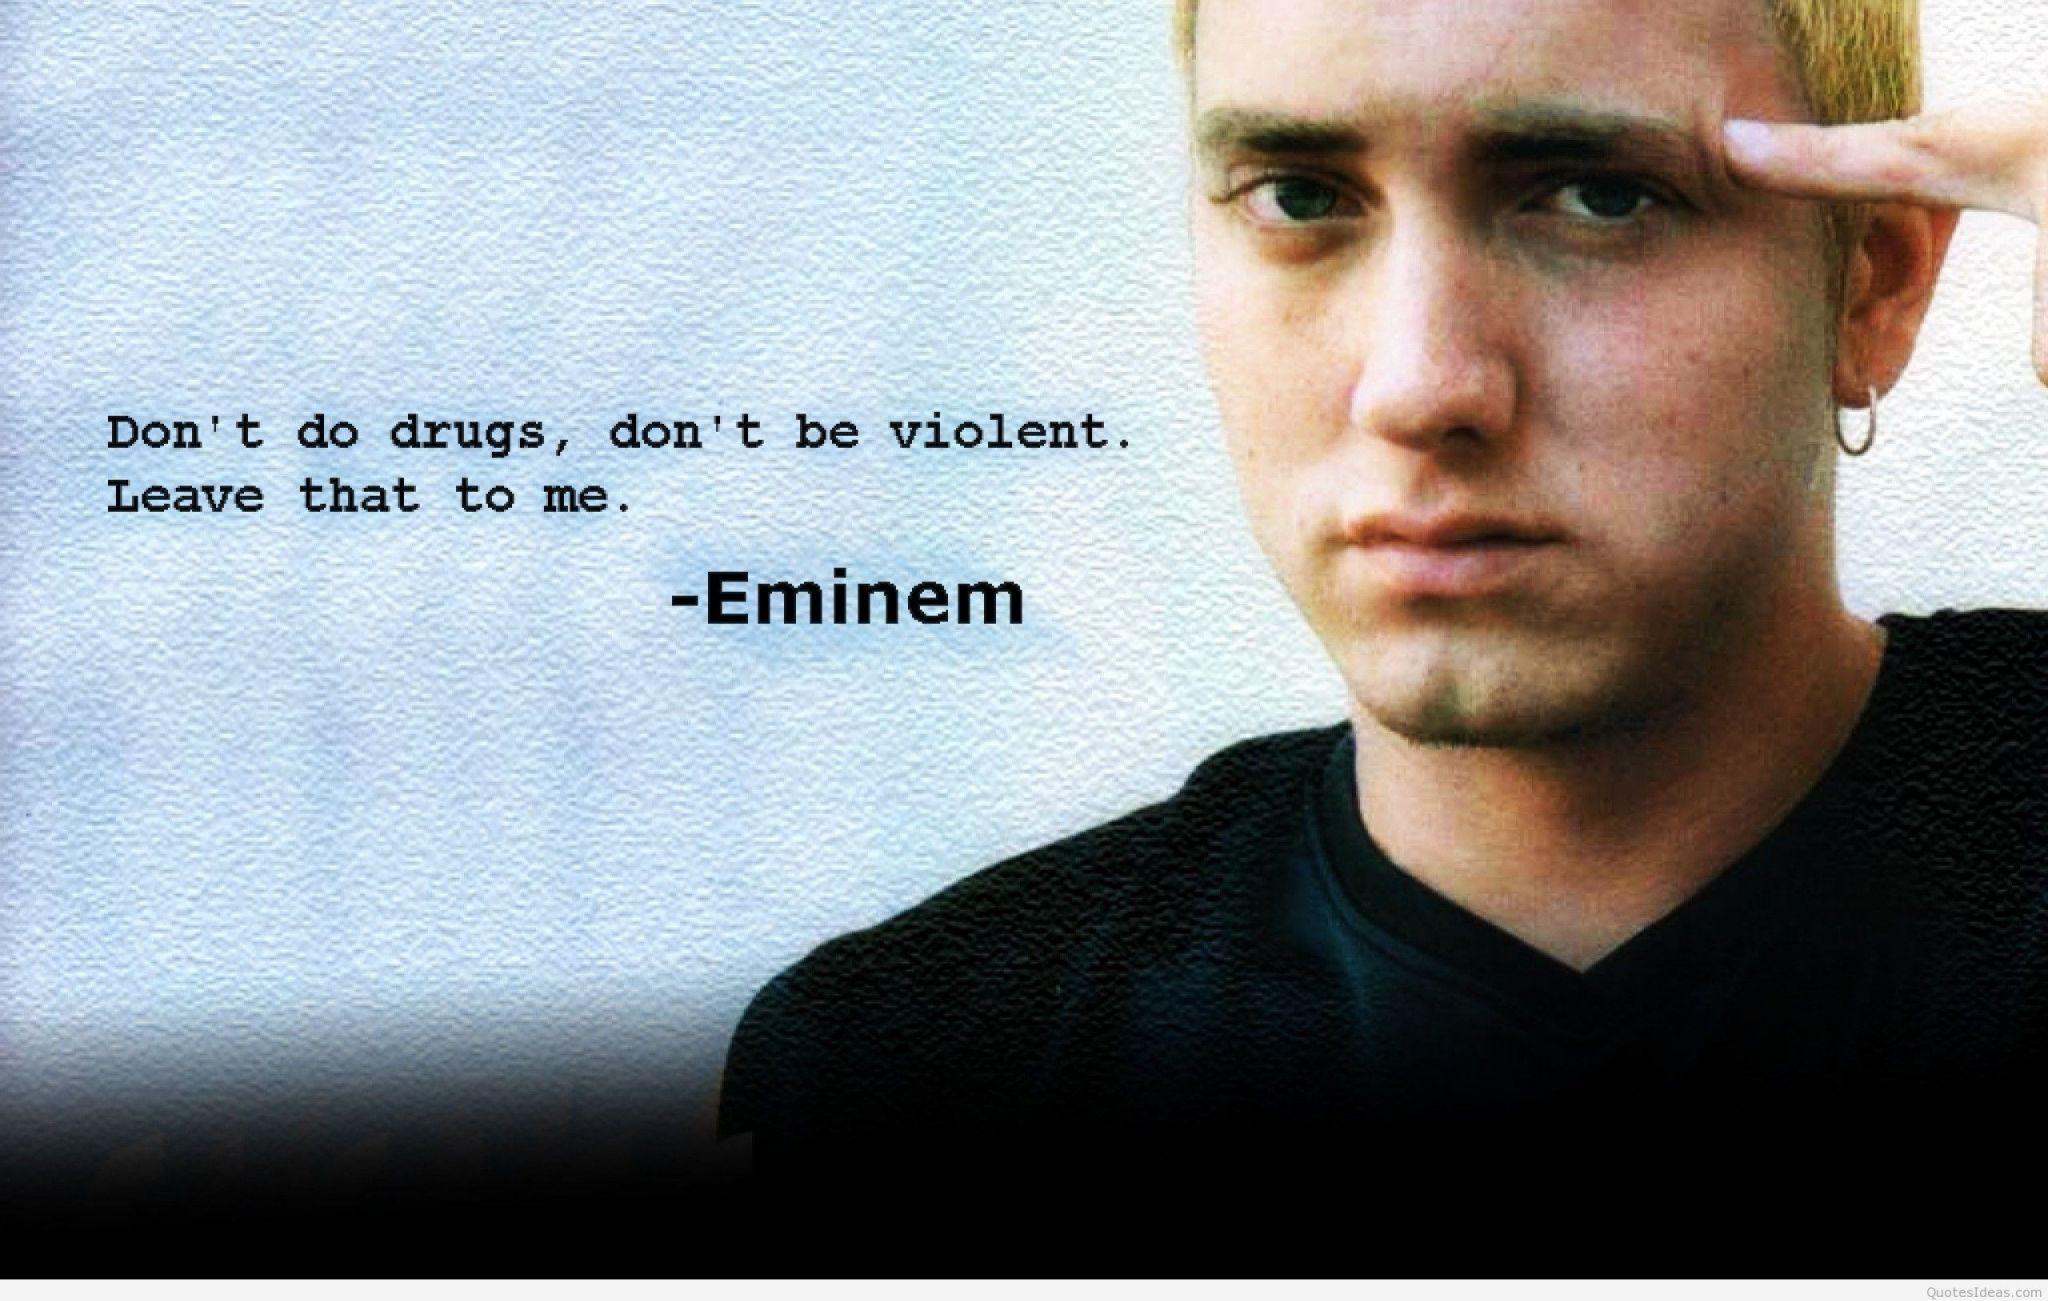 2048 x 1301 · jpeg - eminem wallpaper desktop backgrounds free | Eminem love quotes, Eminem ...